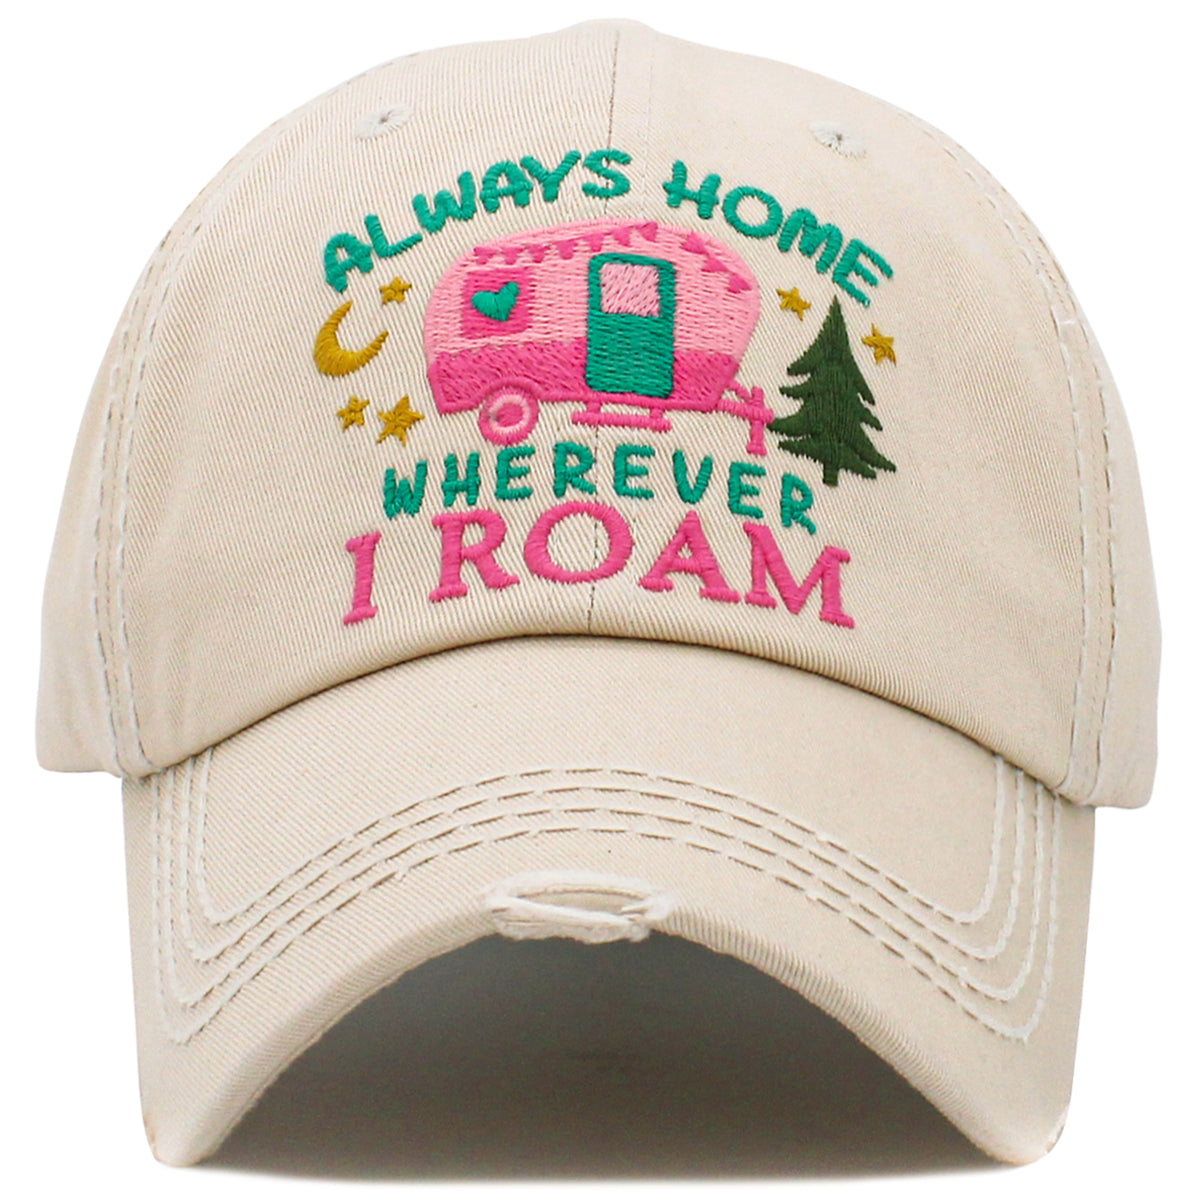 1510 - Always Home Wherever I Roam Hat - Stone